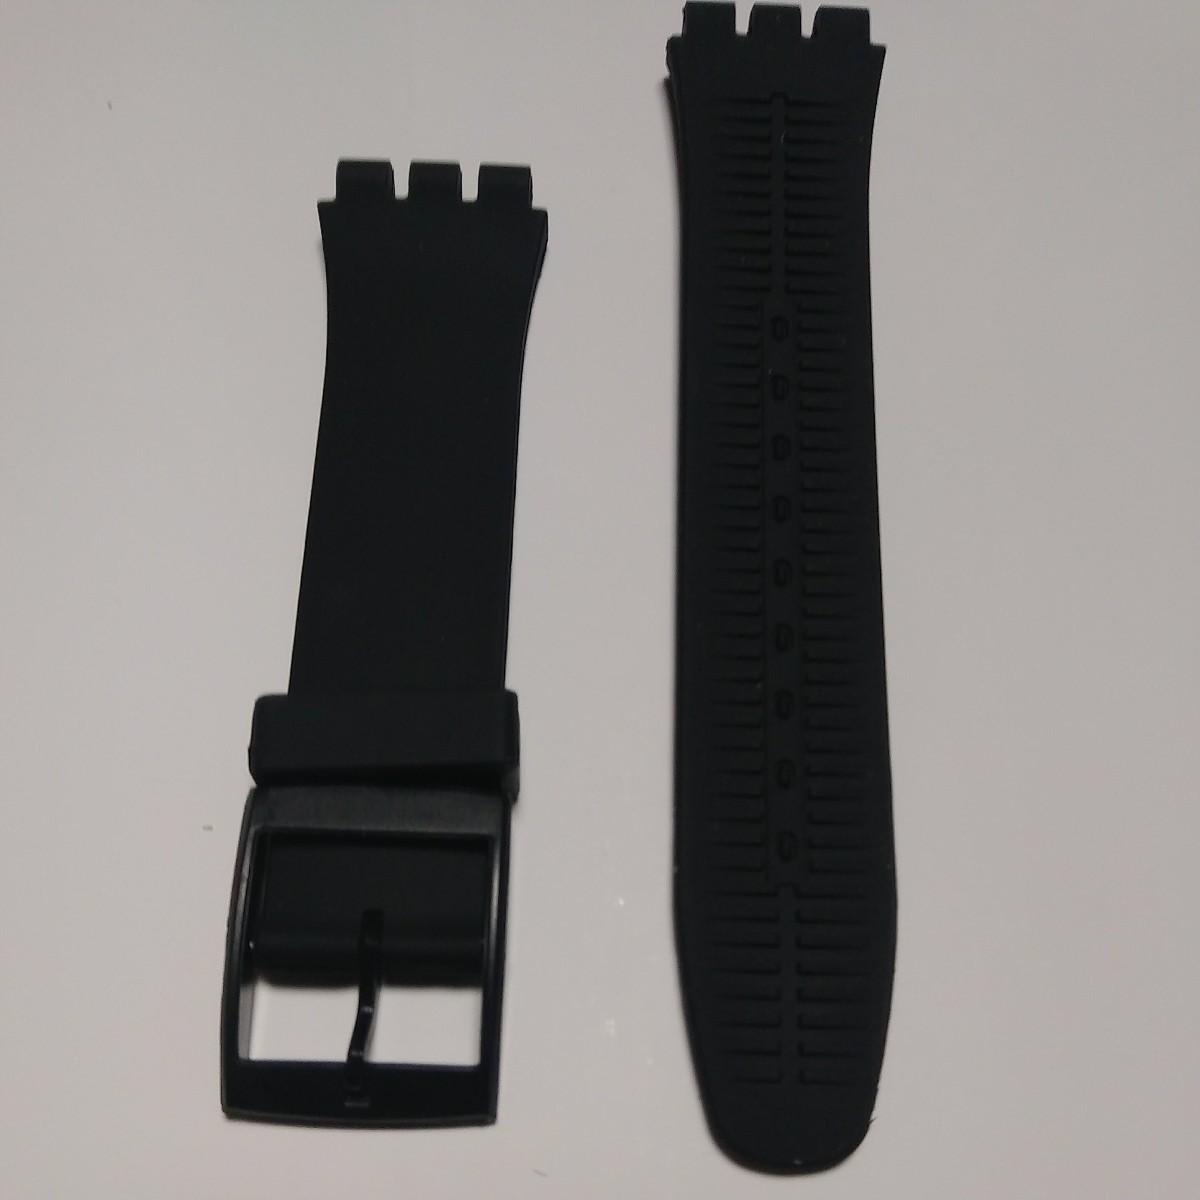 swatch用 シリコンラバーストラップ 交換用腕時計ベルト 19mm 黒_画像2